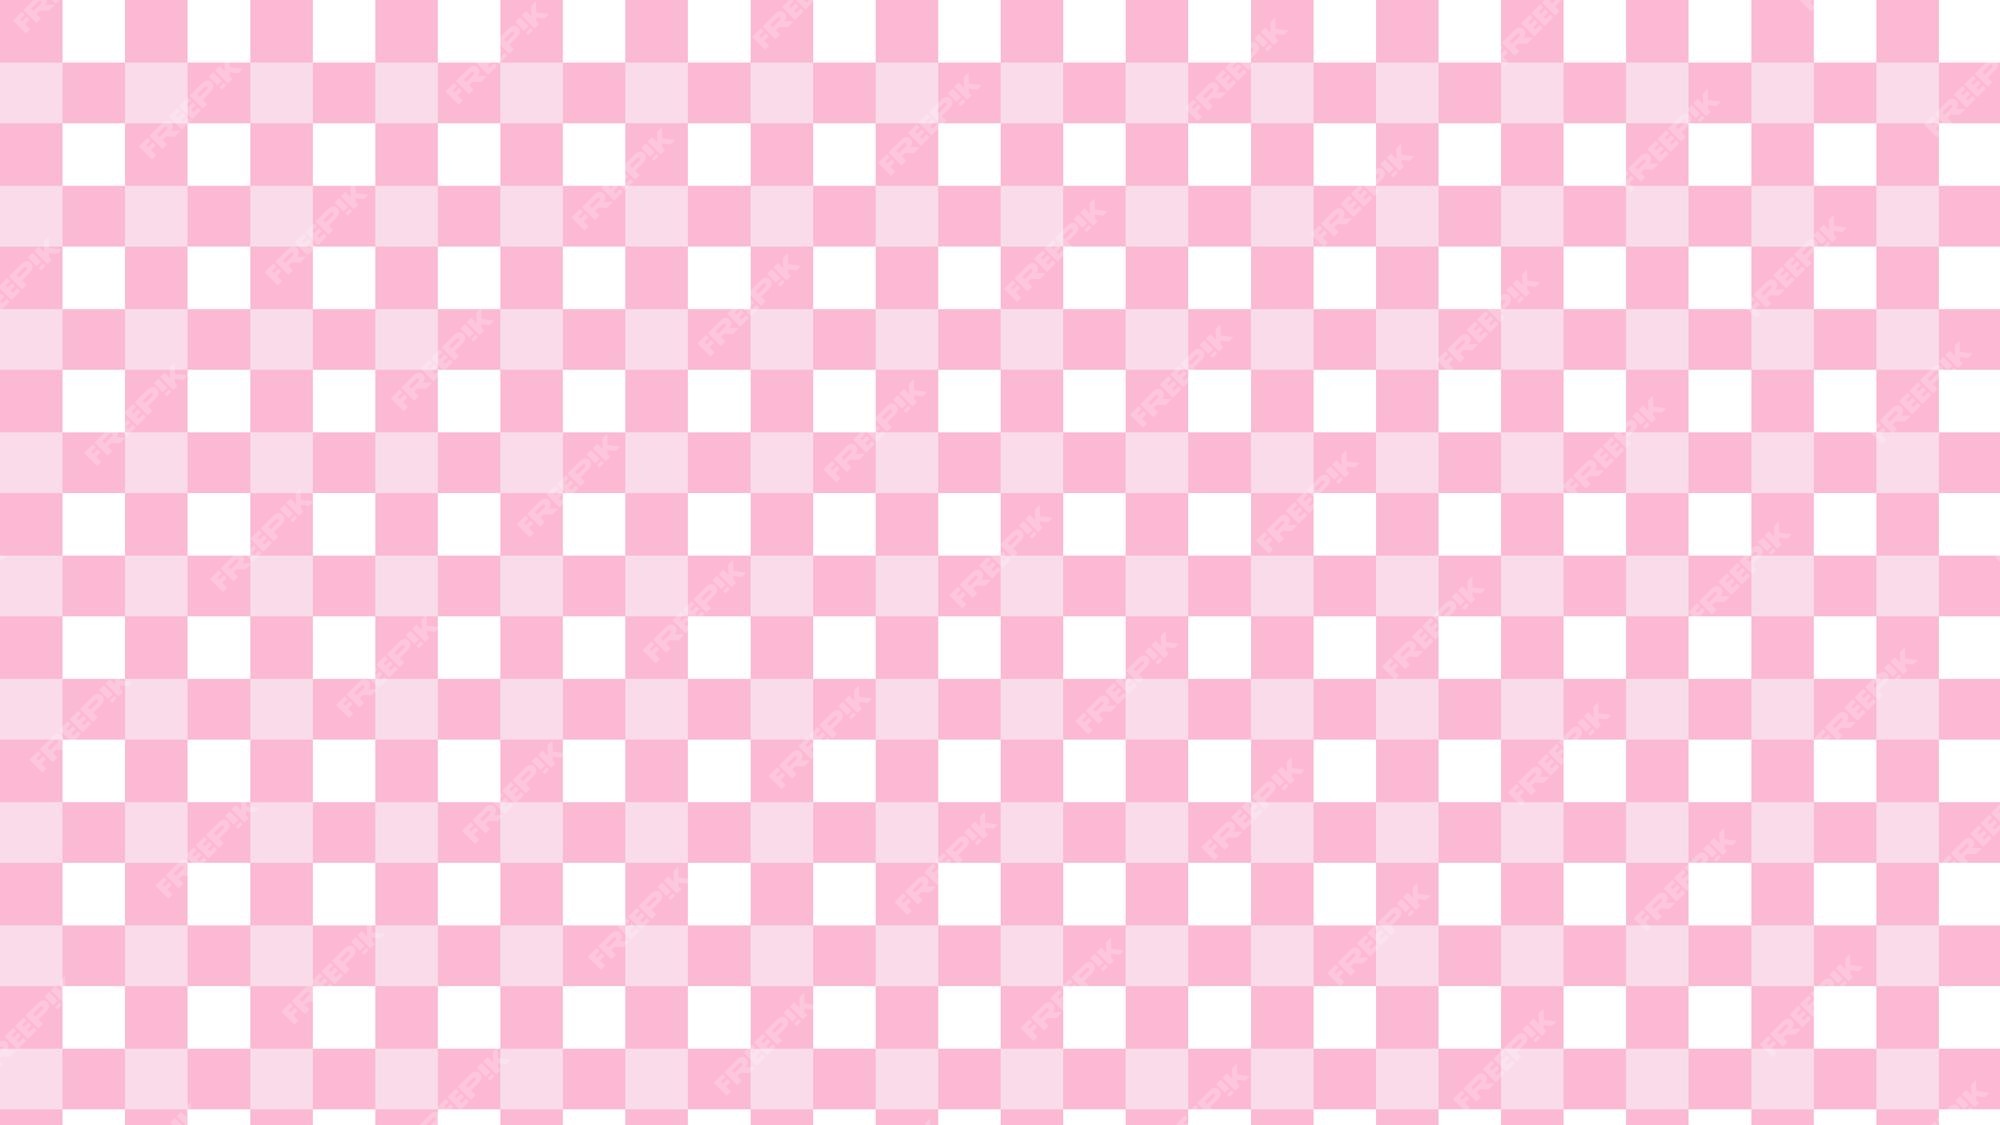 padrão xadrez com desenhos de padrão de vetor sem costura flores rosa e  branco para impressões, papel de parede, têxteis, toalhas de mesa, planos  de fundo xadrez. 4257200 Vetor no Vecteezy